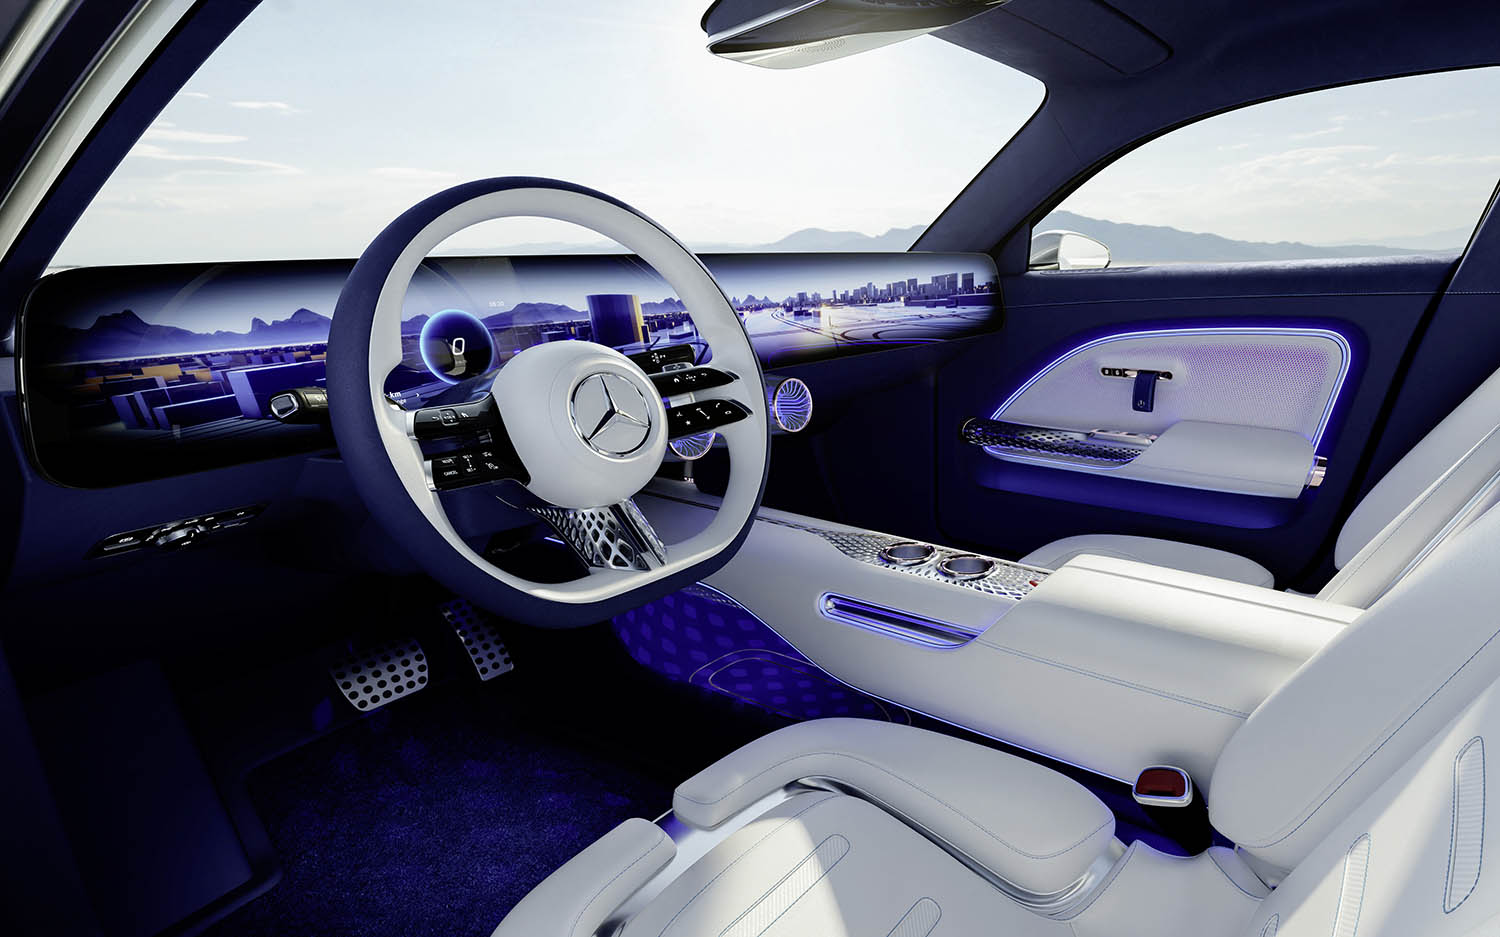 Mercedes-Benz Vision EQXX è una concept-car elettrica con 1000 km di autonomia